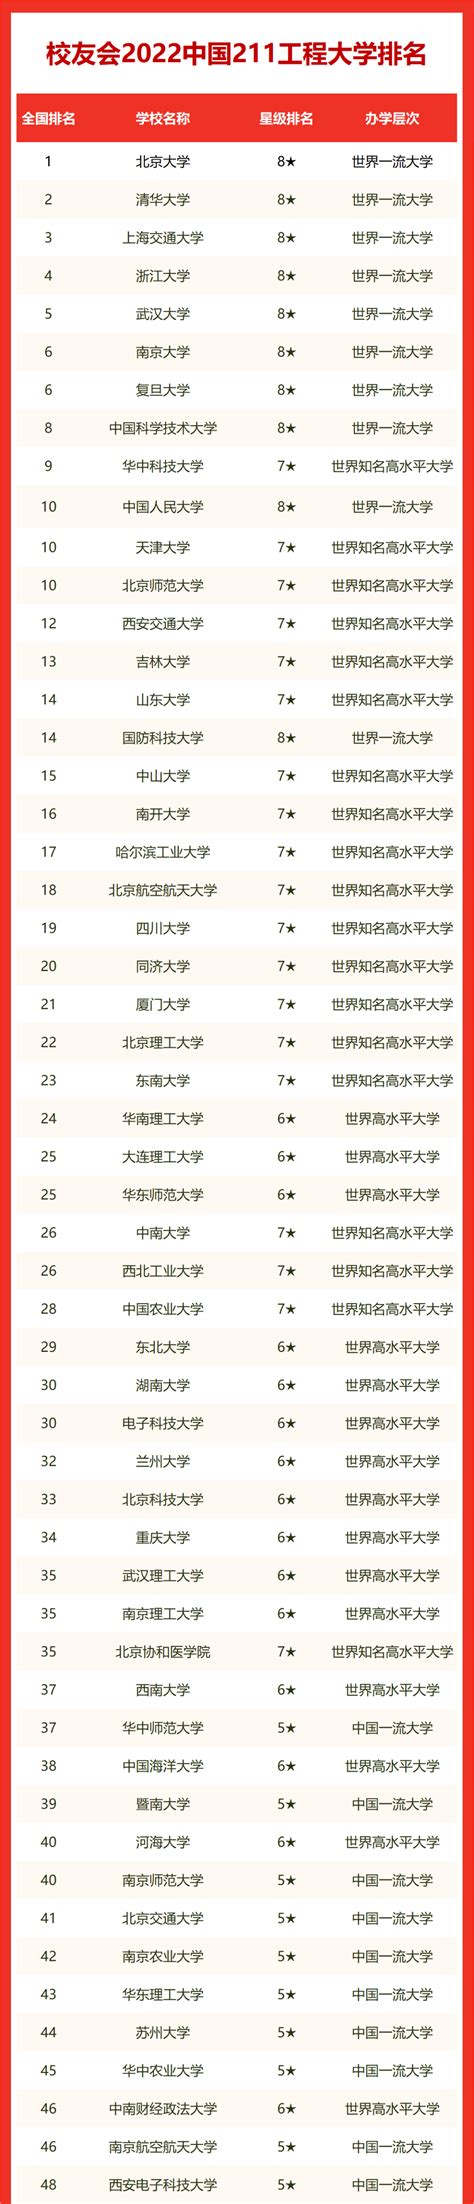 《2014中国新诗排行榜》首发暨朗诵会在京举行_文坛动态_作家网